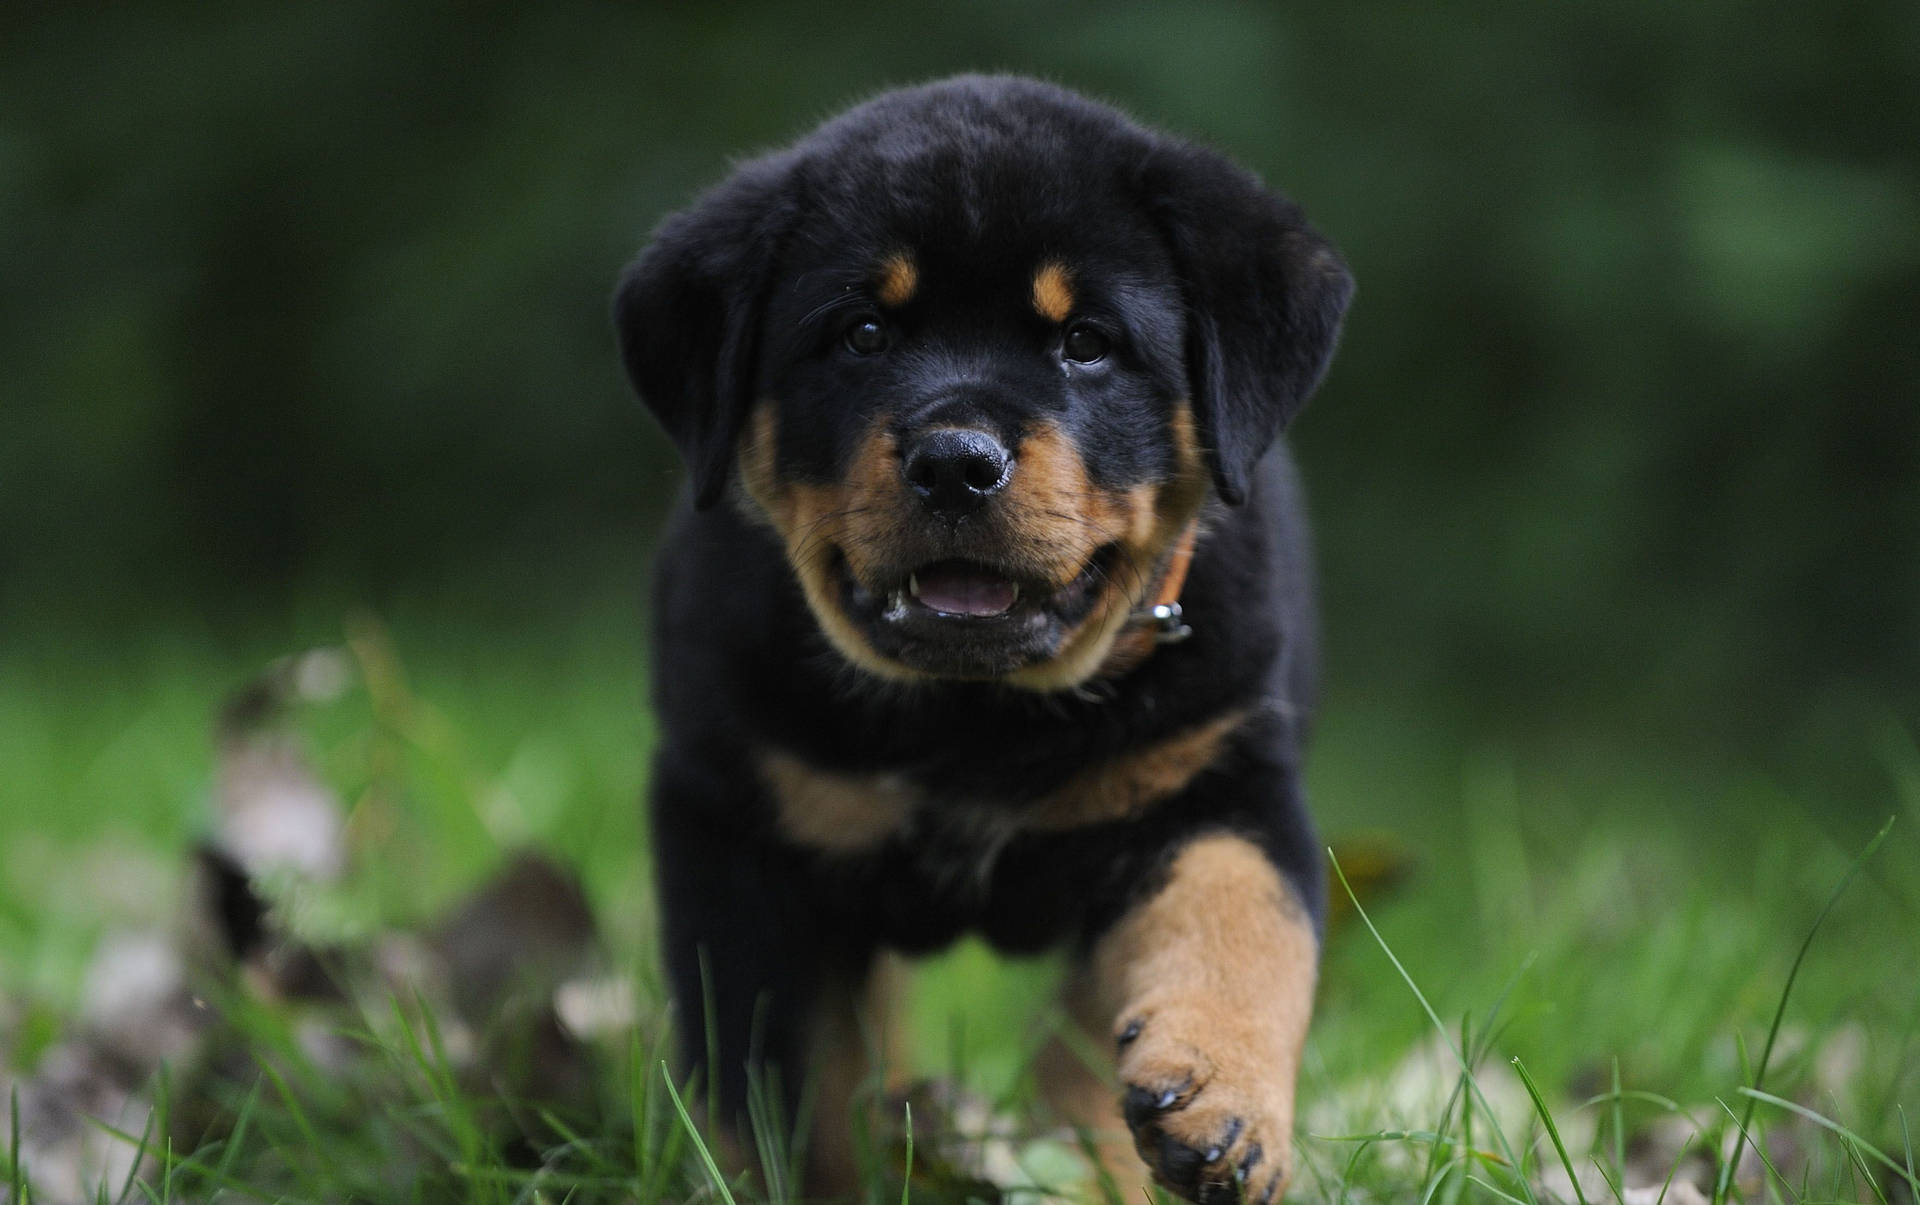 Puppy Rottie Dog On Grass